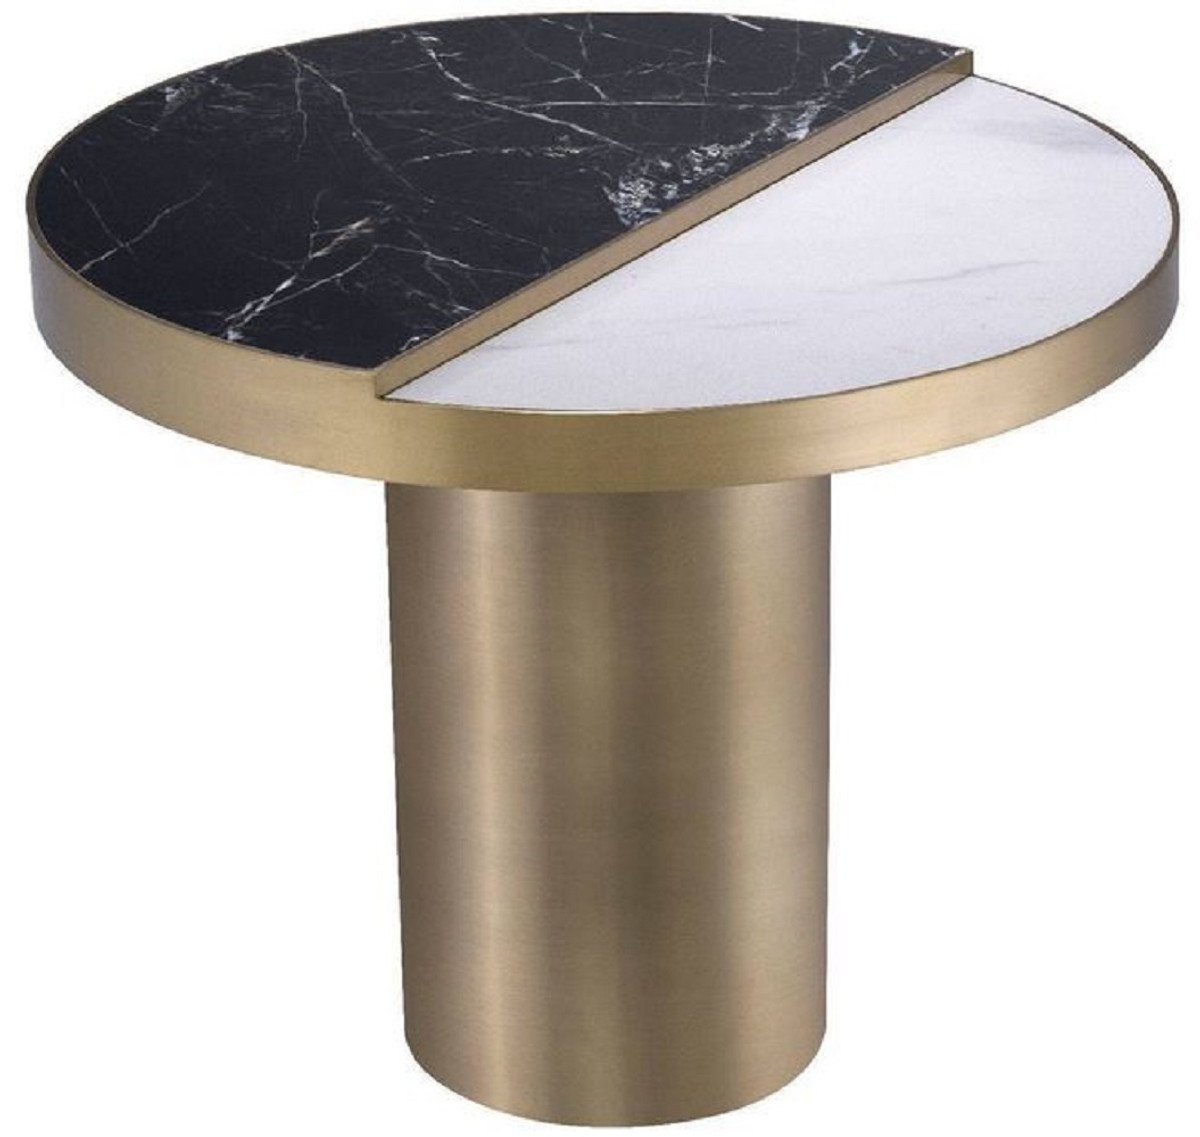 Casa Padrino Beistelltisch Luxus Beistelltisch Schwarz / Weiß / Messingfarben Ø 55 x H. 55,5 cm - Runder Edelstahl Tisch mit 2 halbrunden Keramikplatten - Möbel - Luxus Möbel